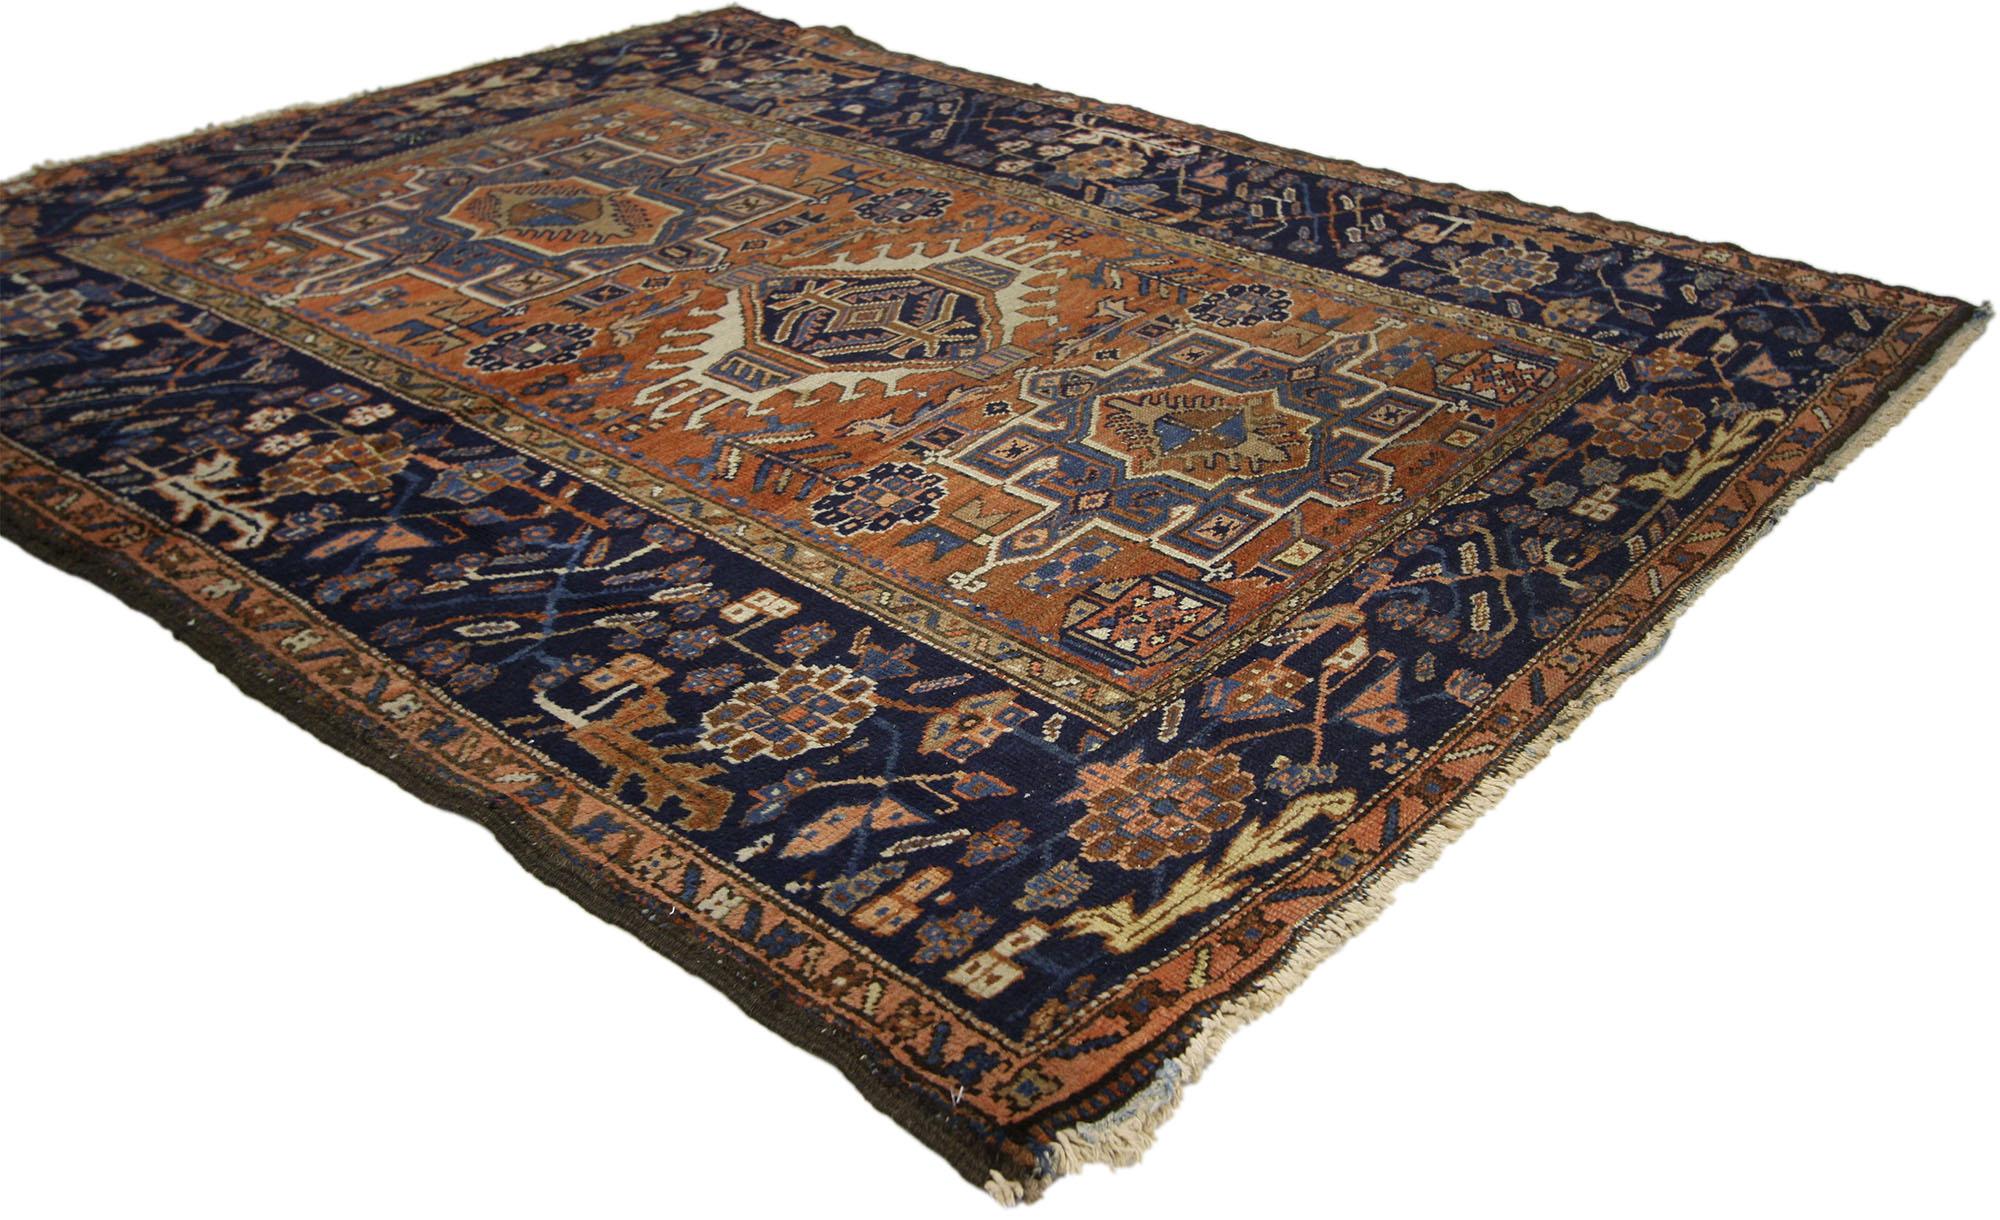 72988 Tapis persan antique Karaja Heriz de style rustique. Ce tapis Karaja Heriz persan antique en laine nouée à la main, au style moderne du milieu du siècle, présente une amulette à crochet flanquée de deux médaillons cruciformes carrés entourés